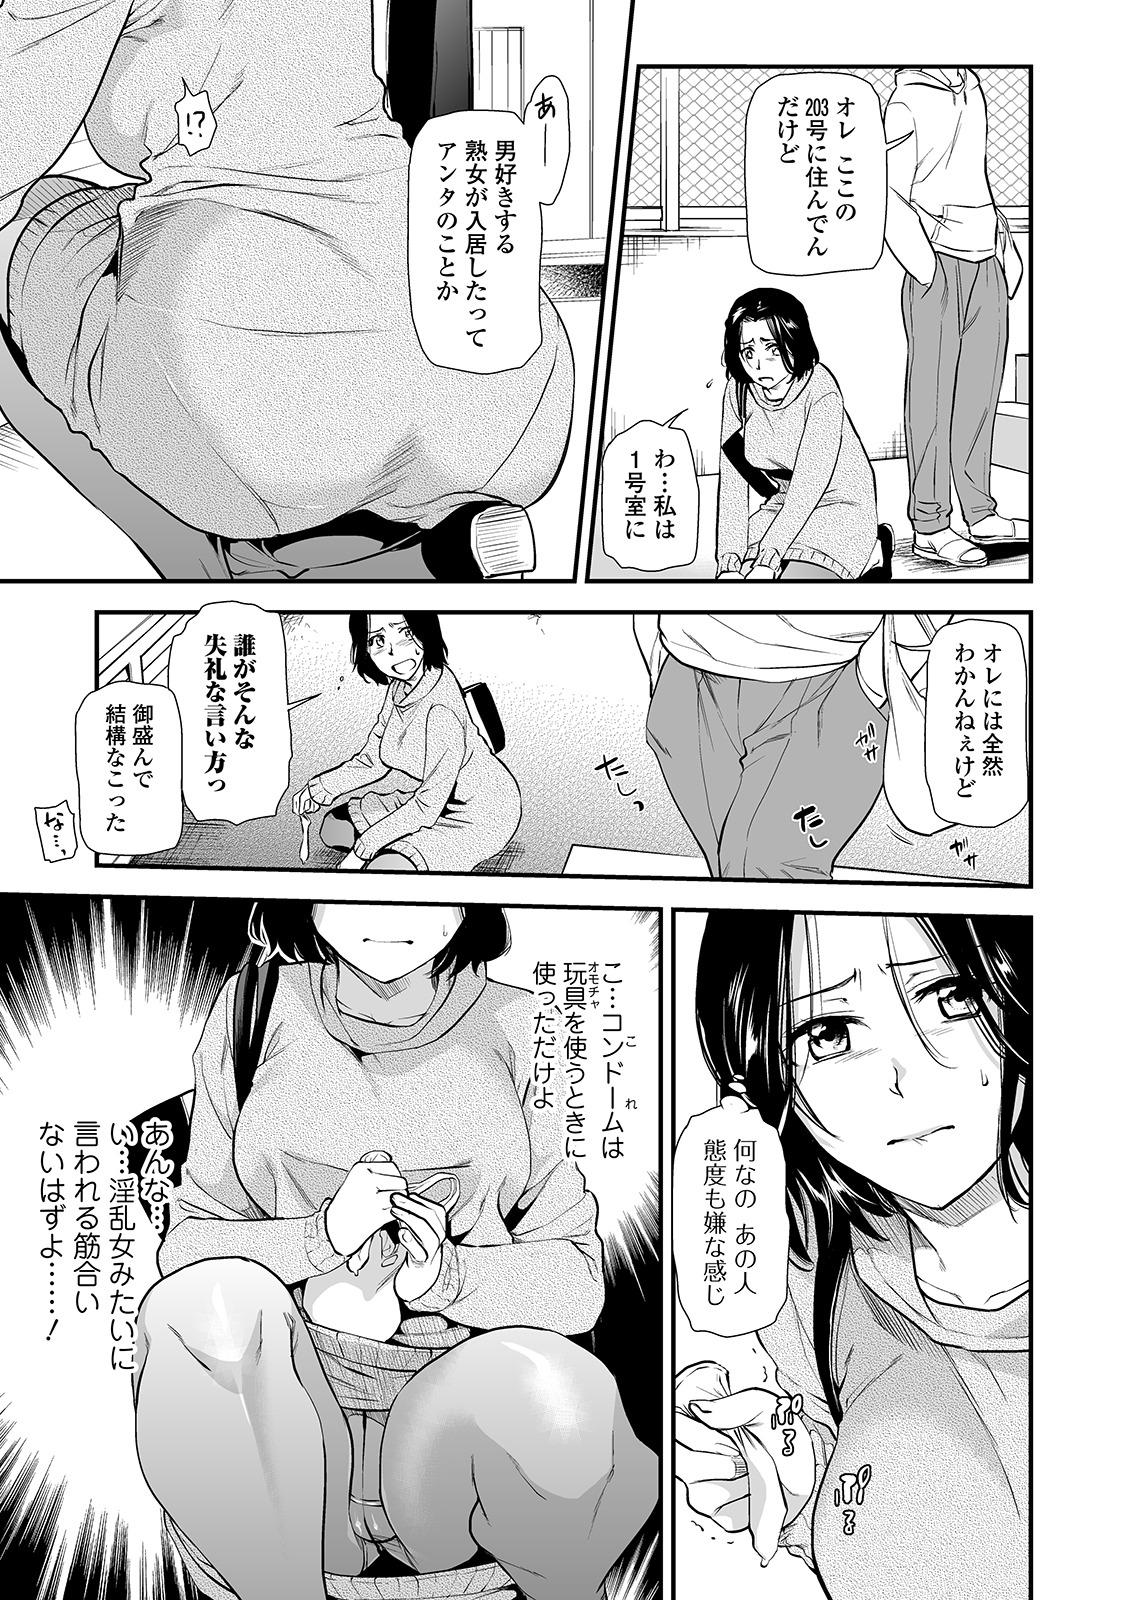 Web Comic Toutetsu Vol. 49 4